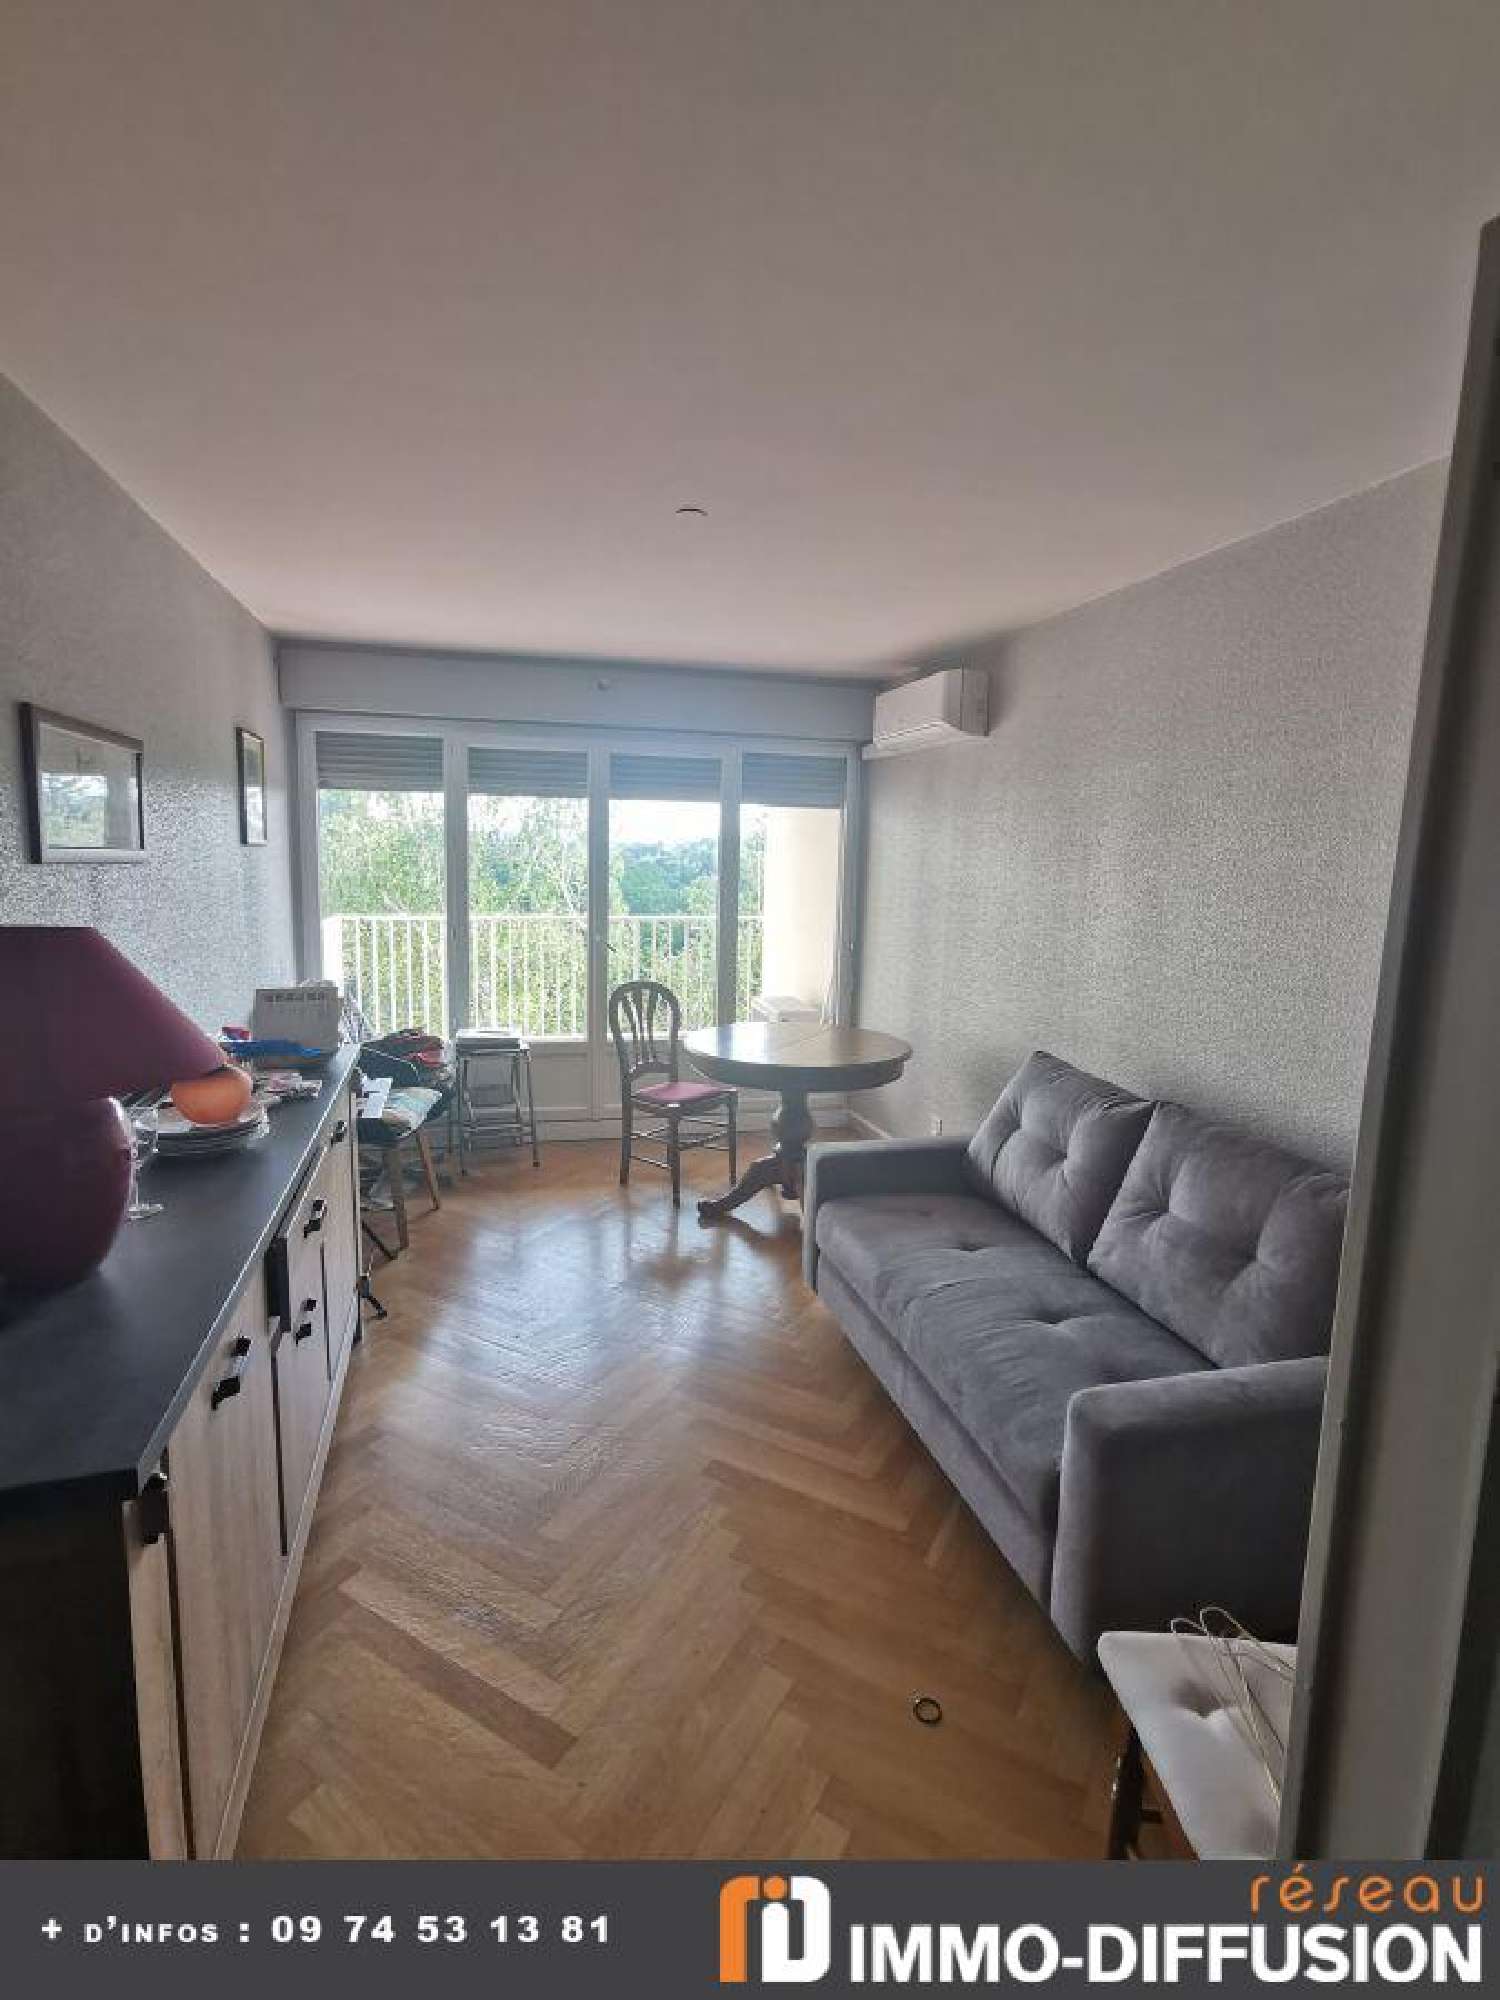  for sale apartment Sainte-Foy-lès-Lyon Rhône 2